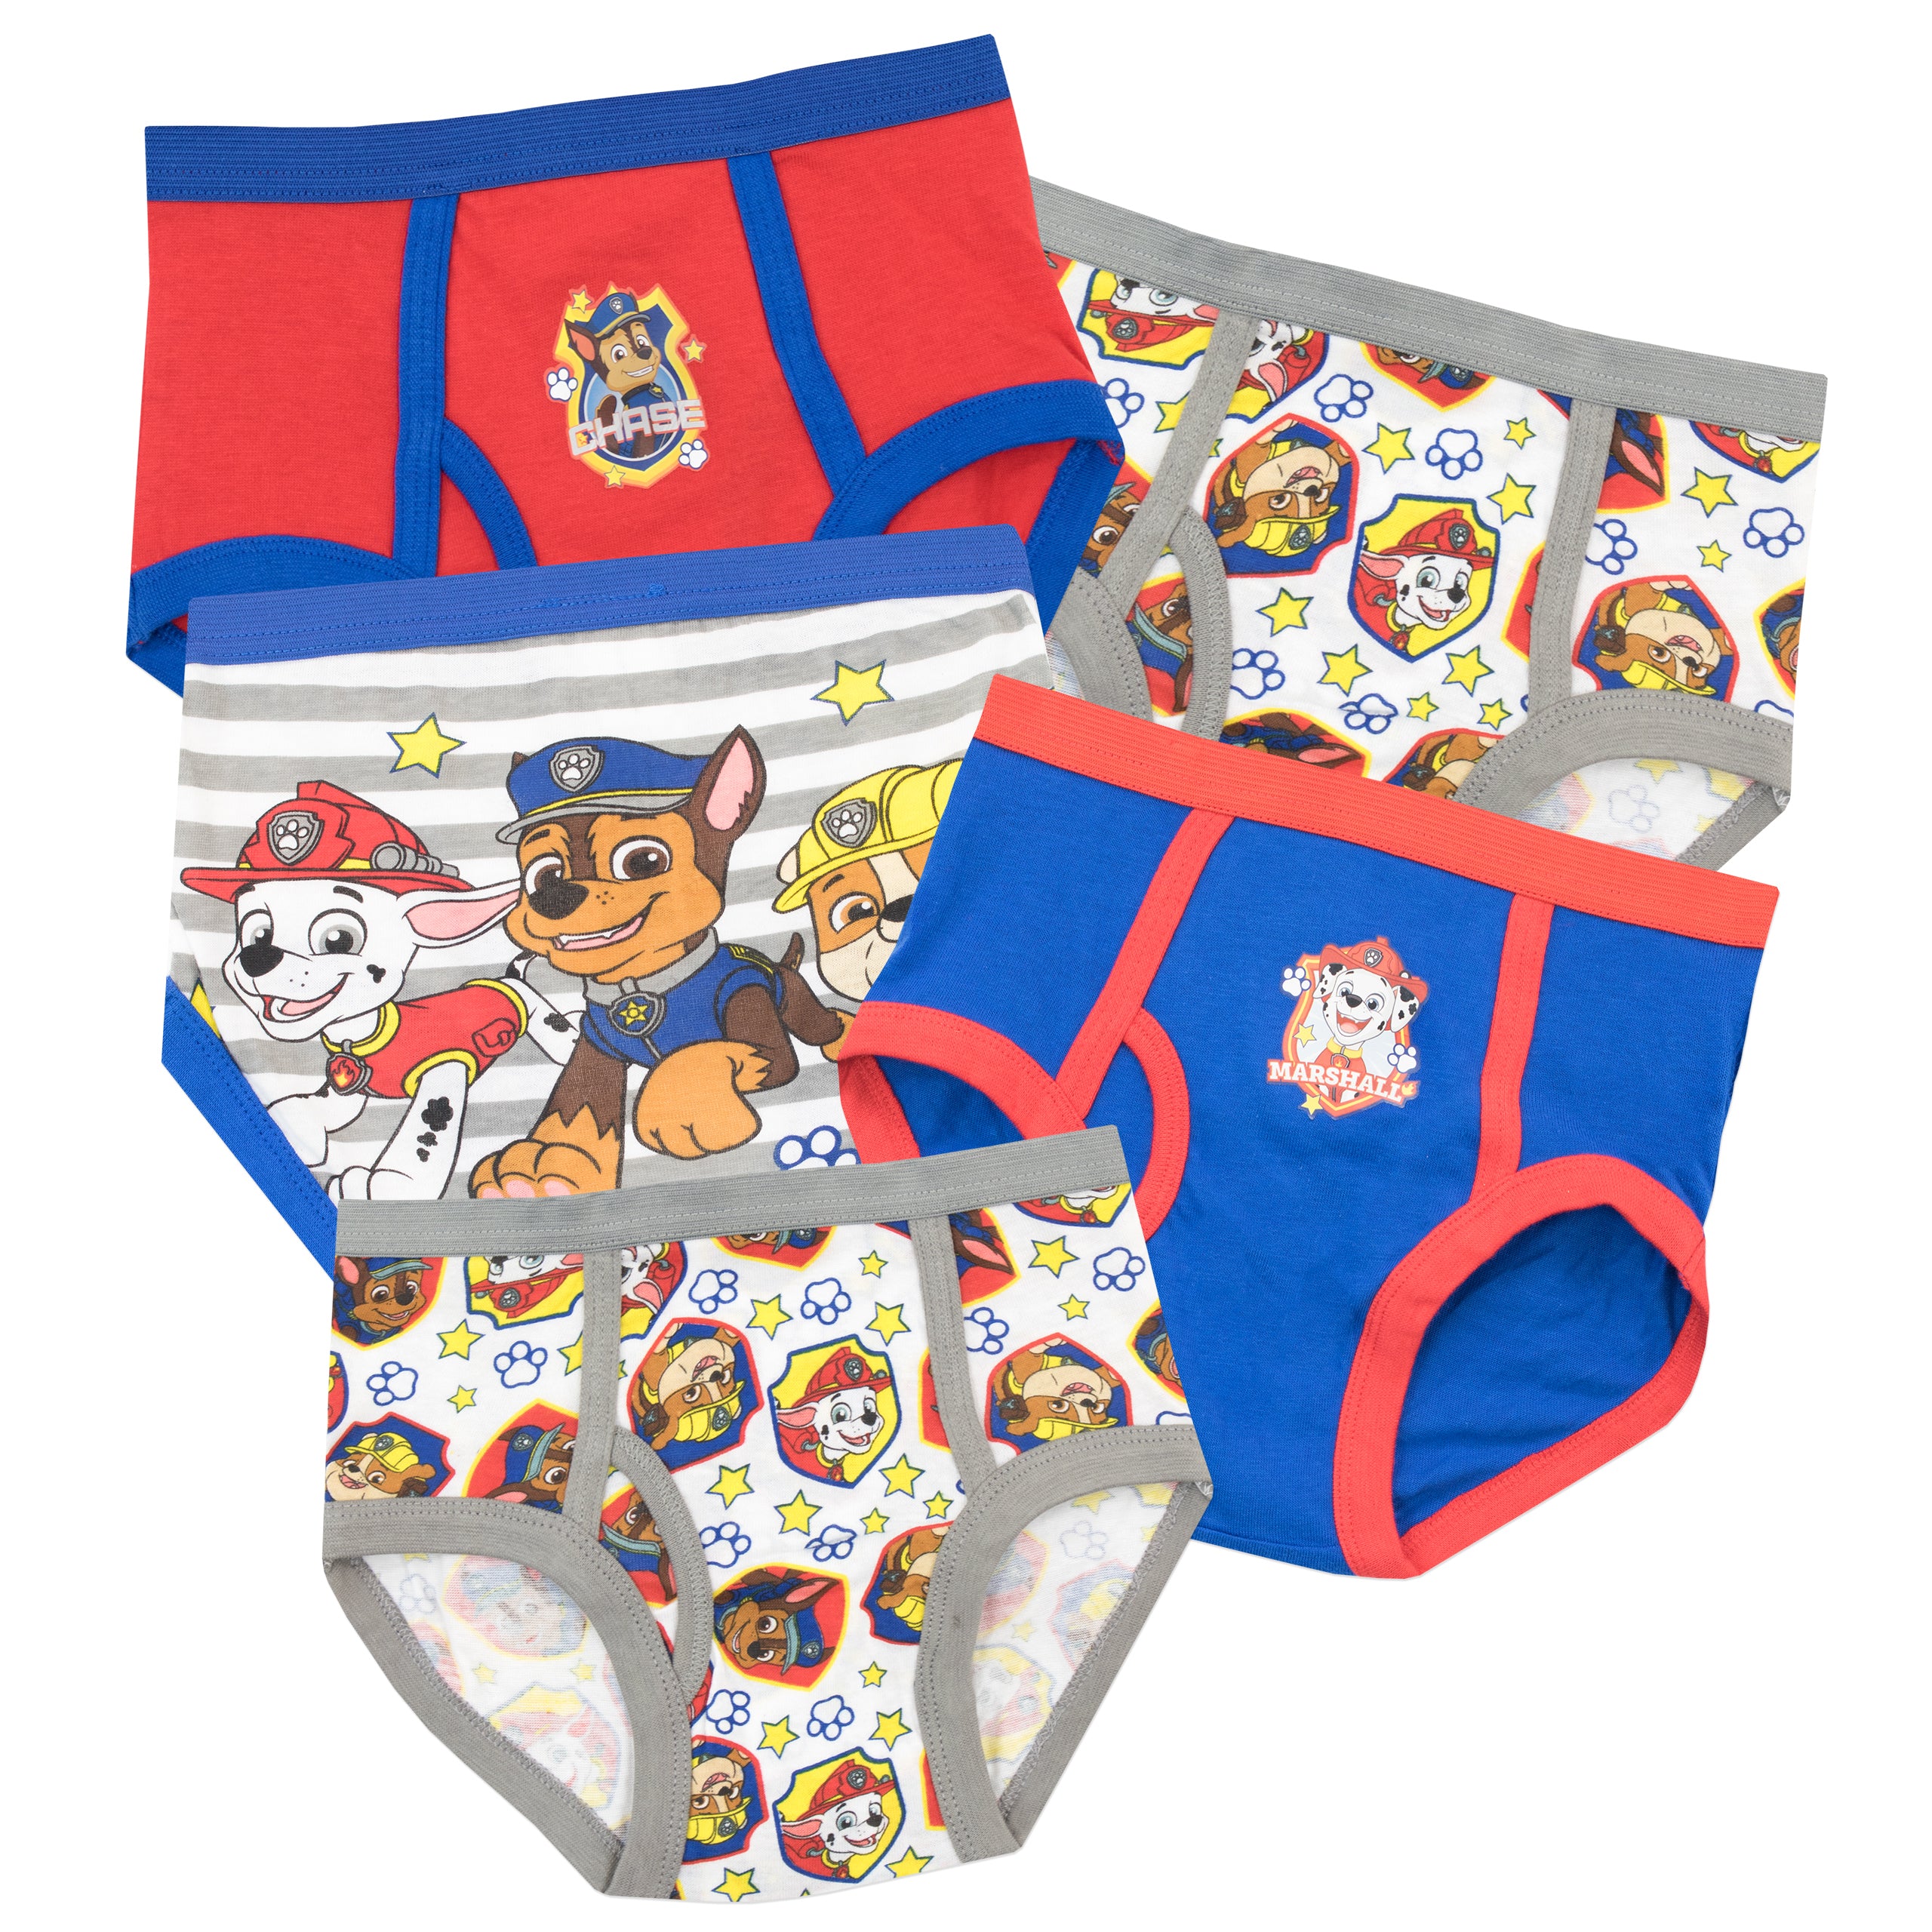 Enfant Paw Patrol Underwear 📣💙 Perfectly snug and ready for